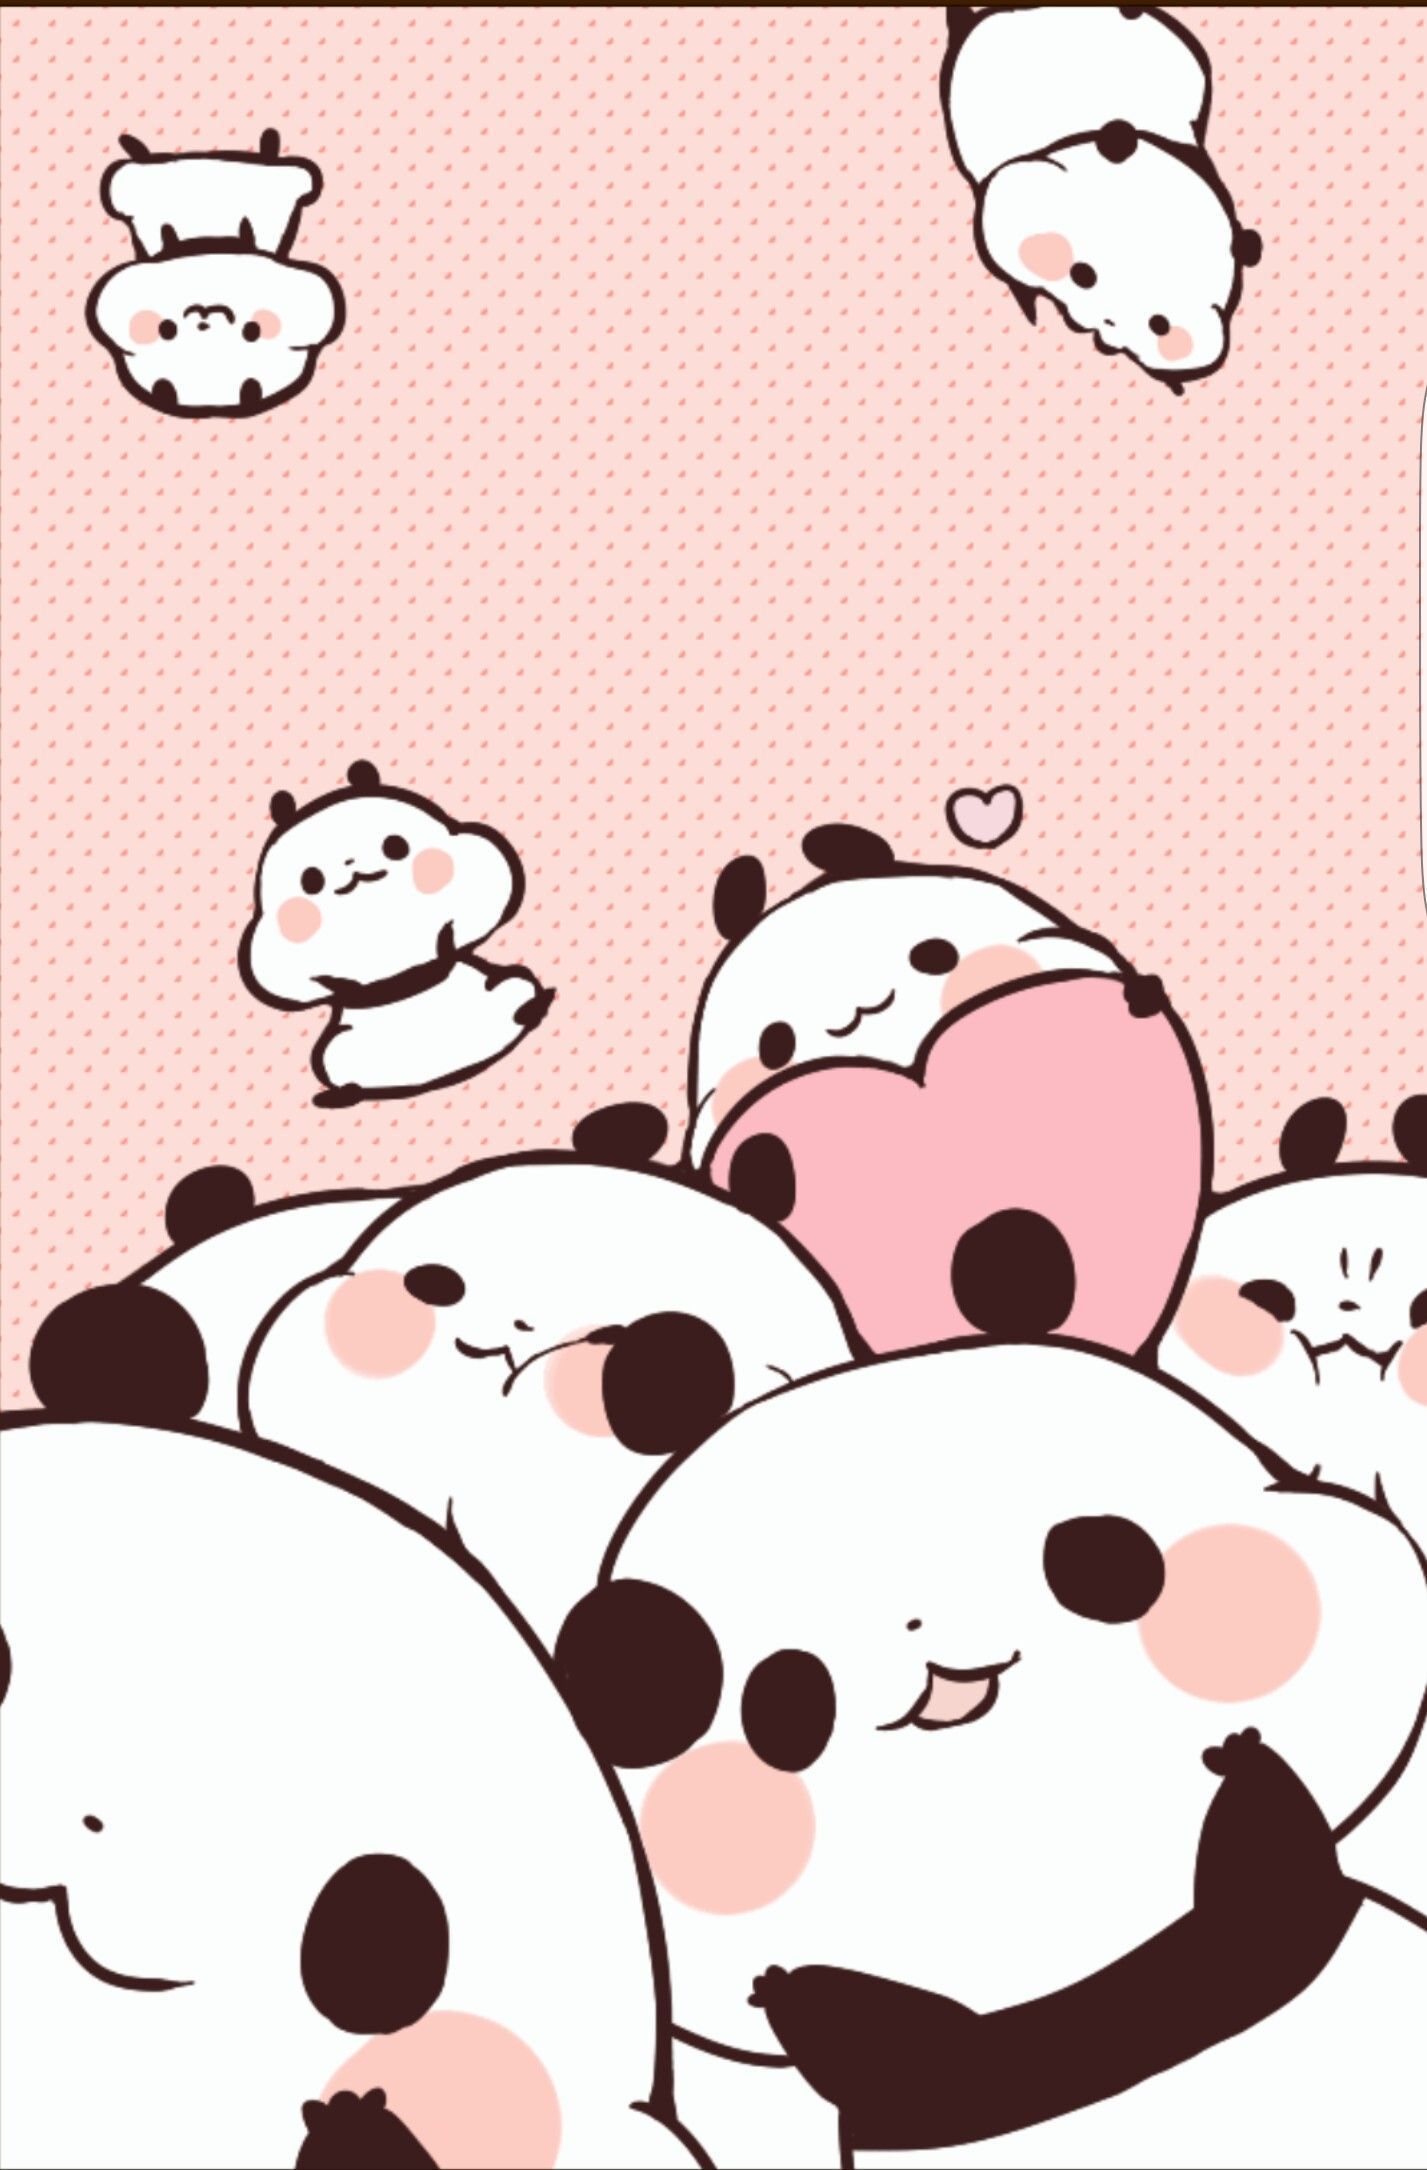 Cute panda wallpaper Vectors  Illustrations for Free Download  Freepik